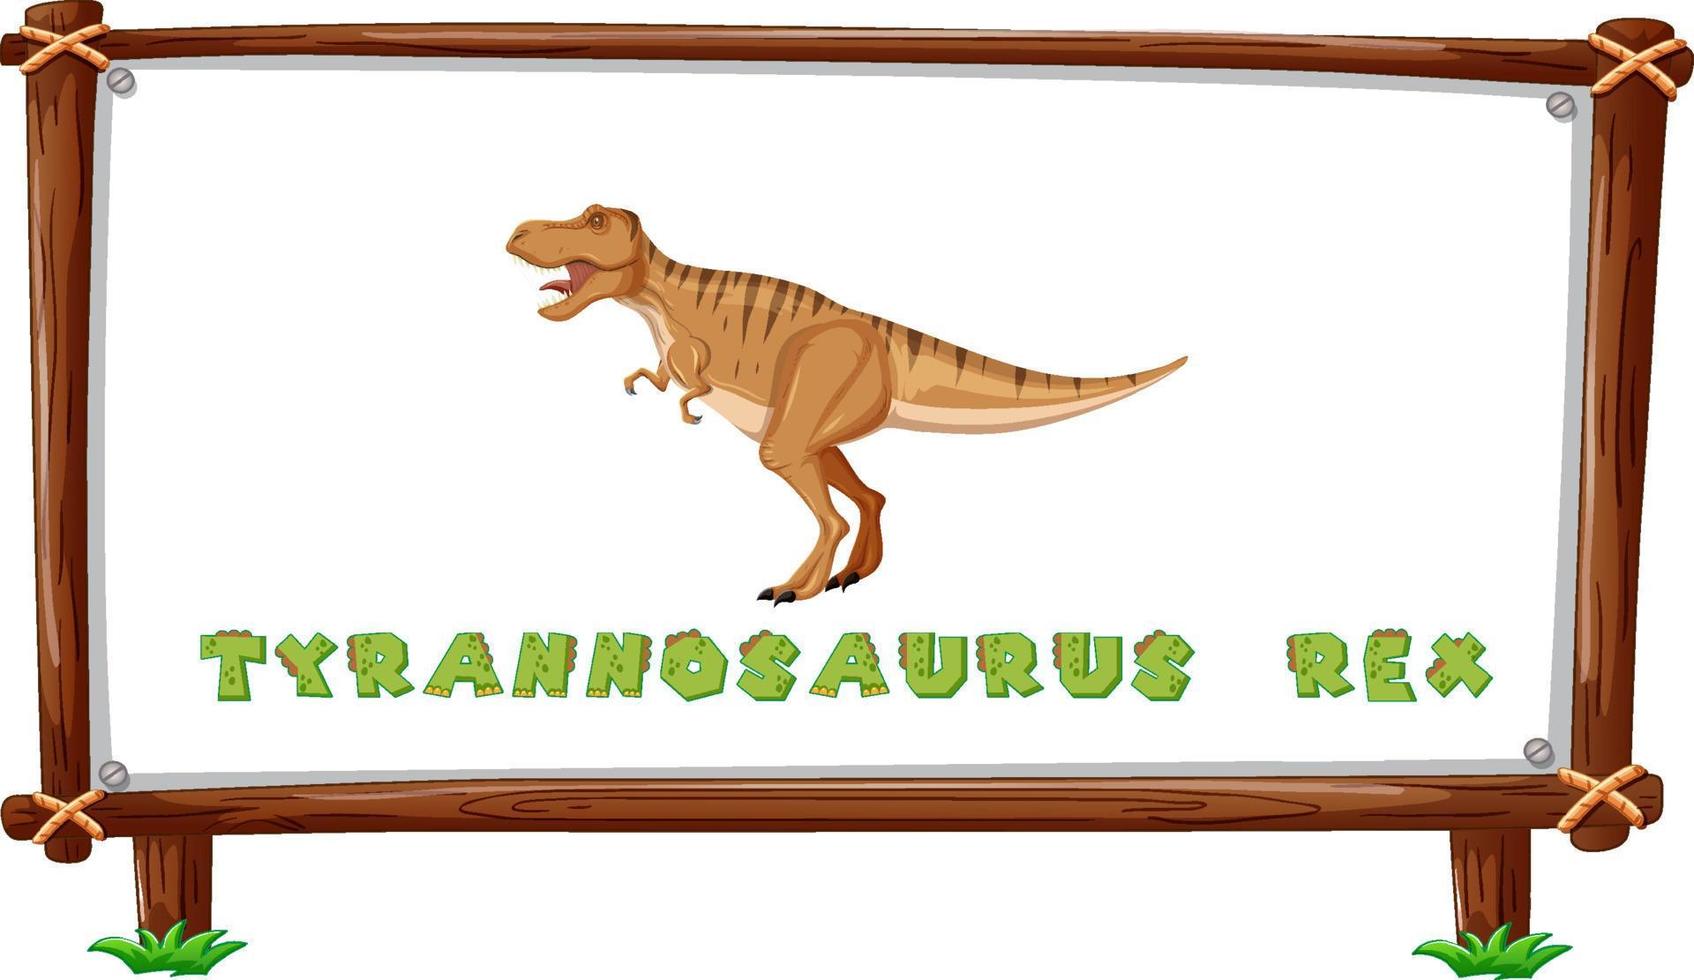 modèle de cadre avec dinosaures et texte tyrannosaurus rex design à l'intérieur vecteur